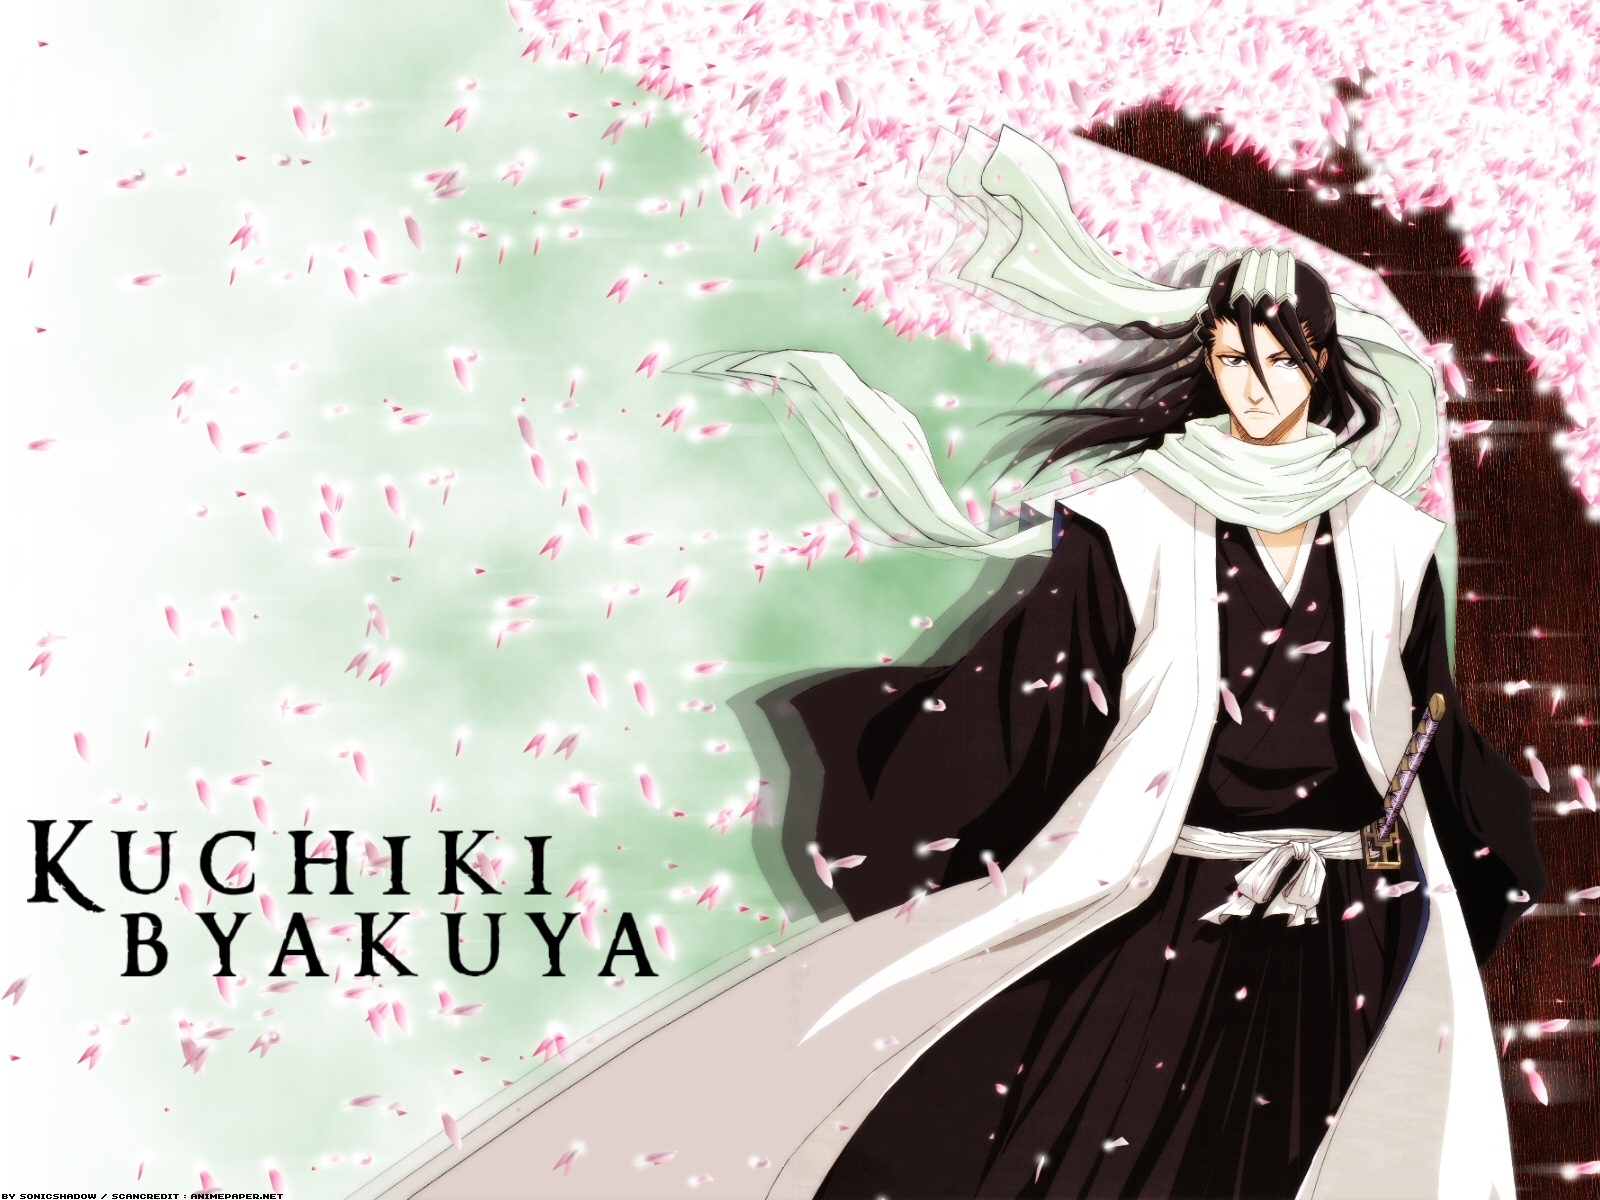 Kuchiki Byakuya Image HD Wallpaper And Background